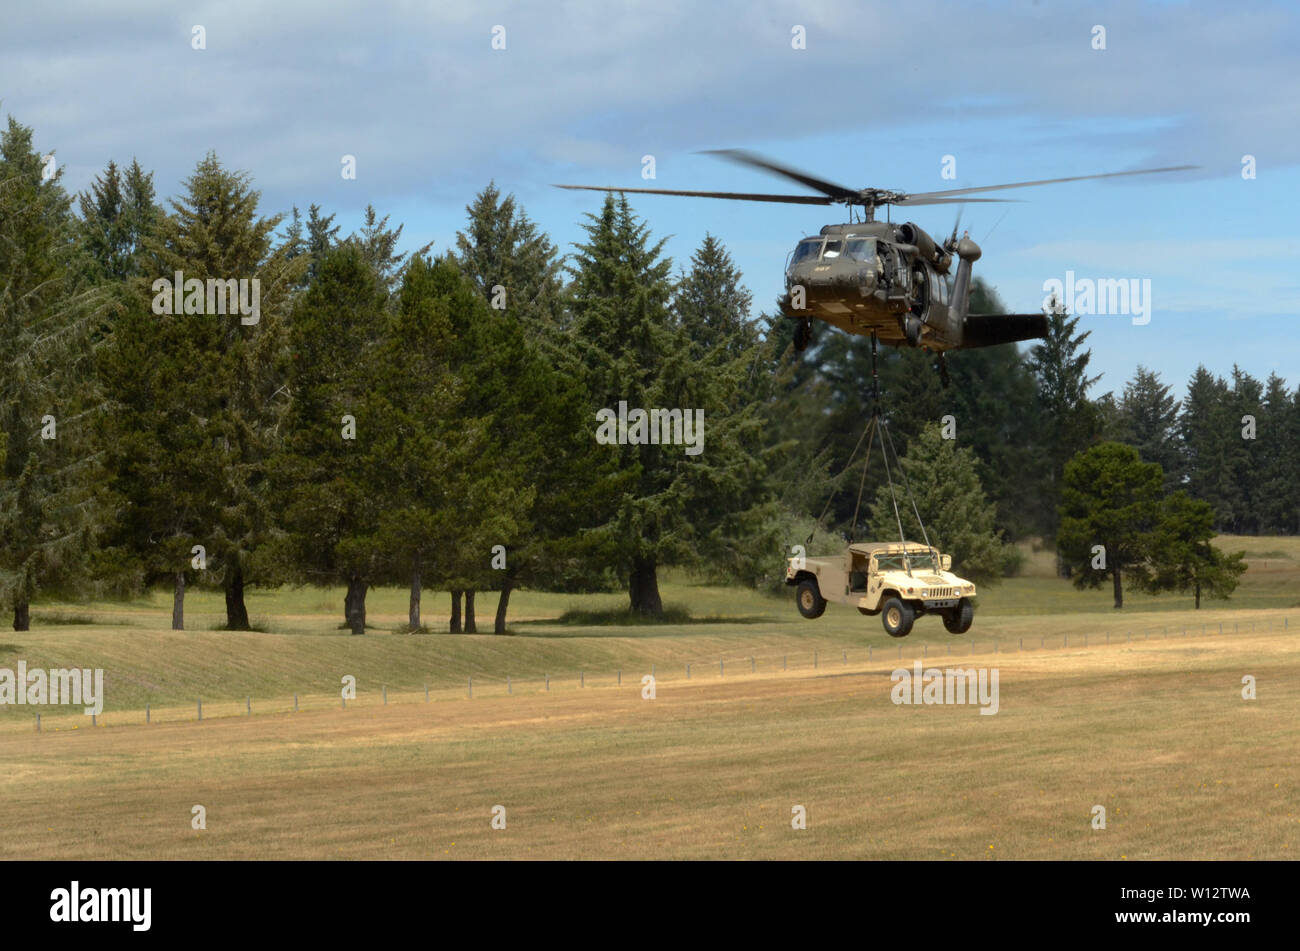 Un UH-60 Black Hawk se prépare à lever une armée forte mobilité Multipurpose roues pendant la formation d'assaut aérien au Camp Rilea, Warrenton, Oregon, le 27 juin 2019. La Garde Nationale (photo de John Hughel, Affaires publiques du Département militaire de l'Oregon) Banque D'Images